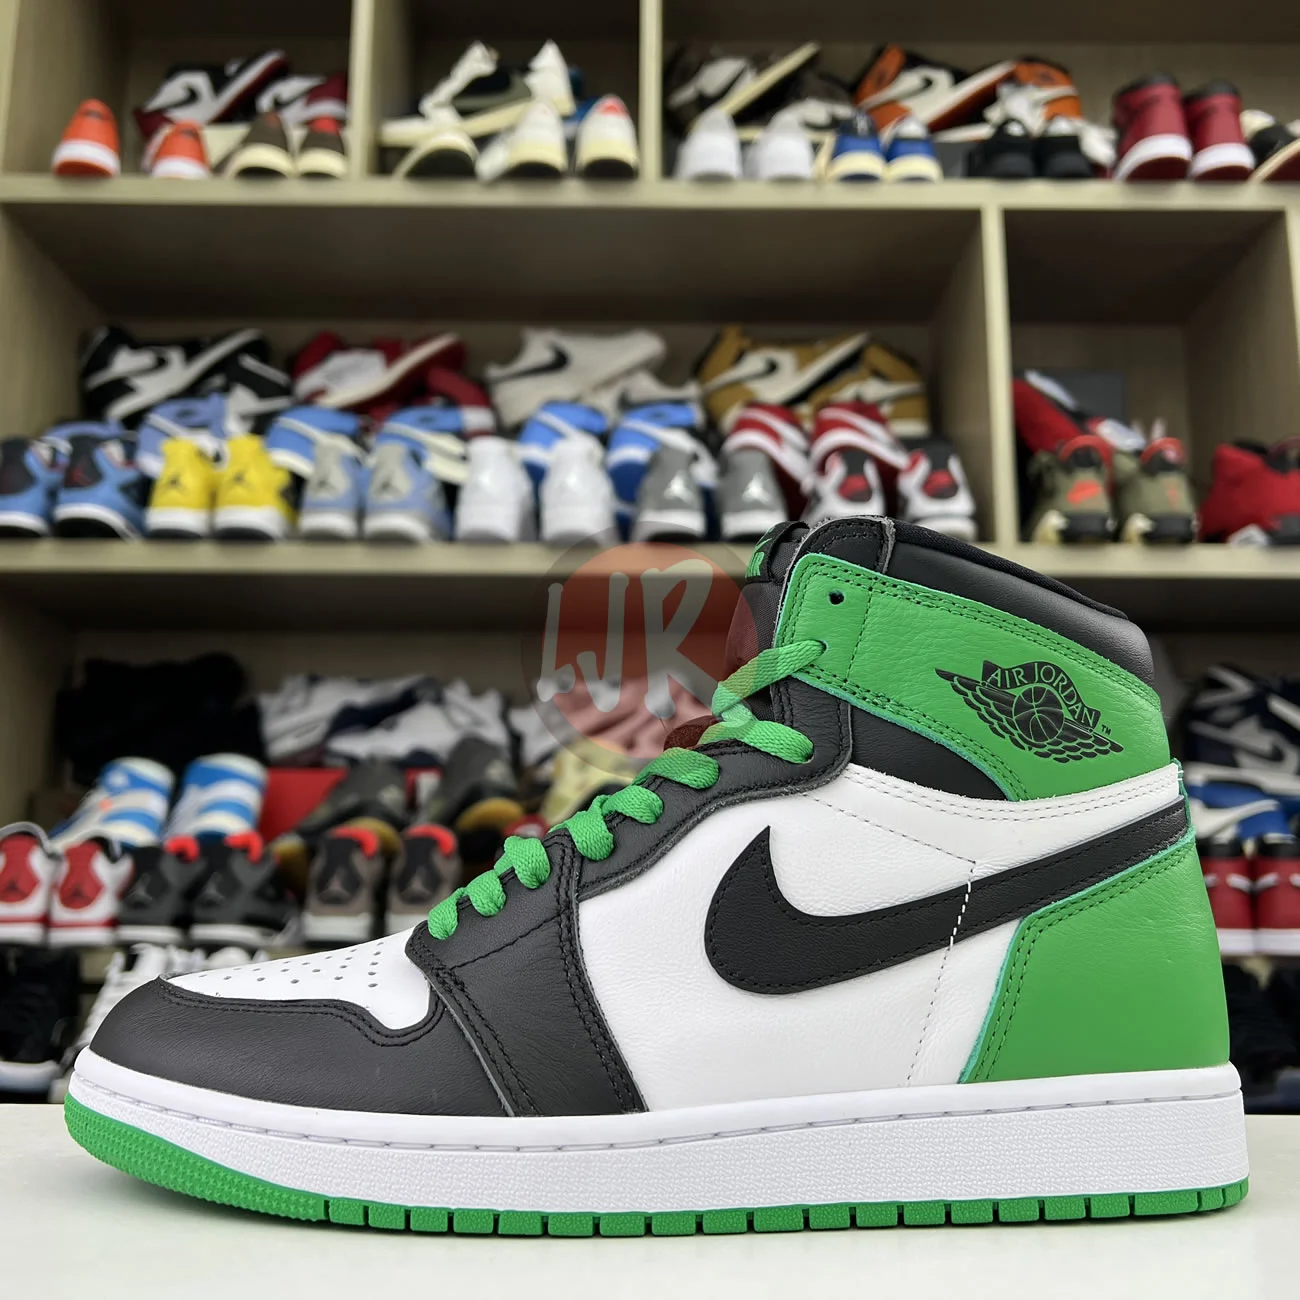 Air Jordan 1 Retro High Og Lucky Green Dz5485 031 Ljr Sneakers (1) - www.ljrofficial.com